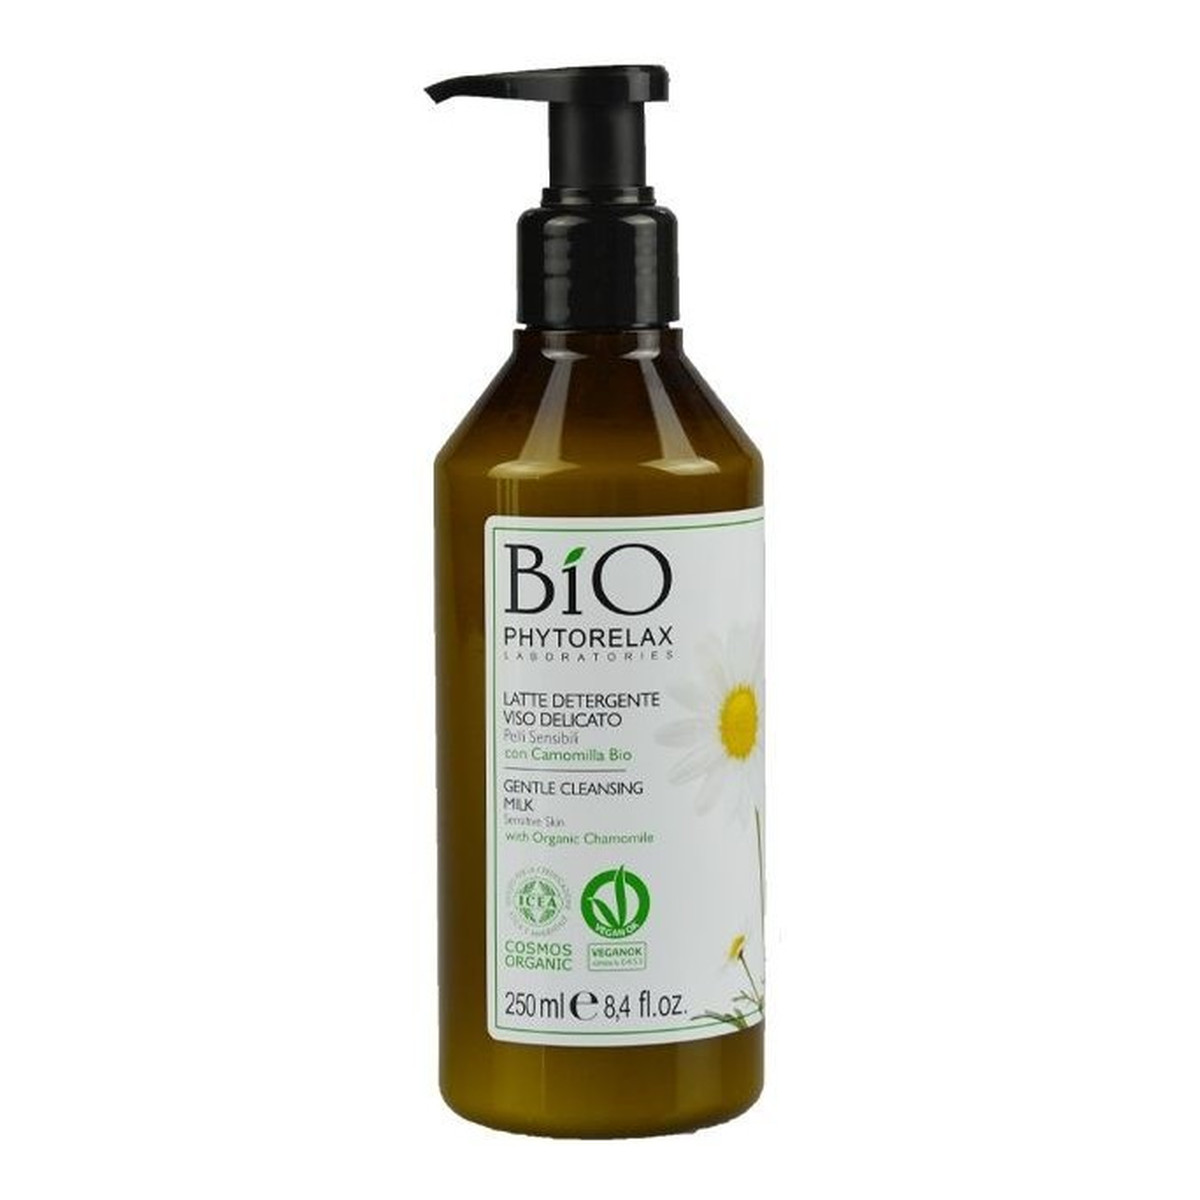 Phytorelax Bio Gentle Cleansung Milk Sensitive Skin Delikatne mleczko oczyszczające 250ml